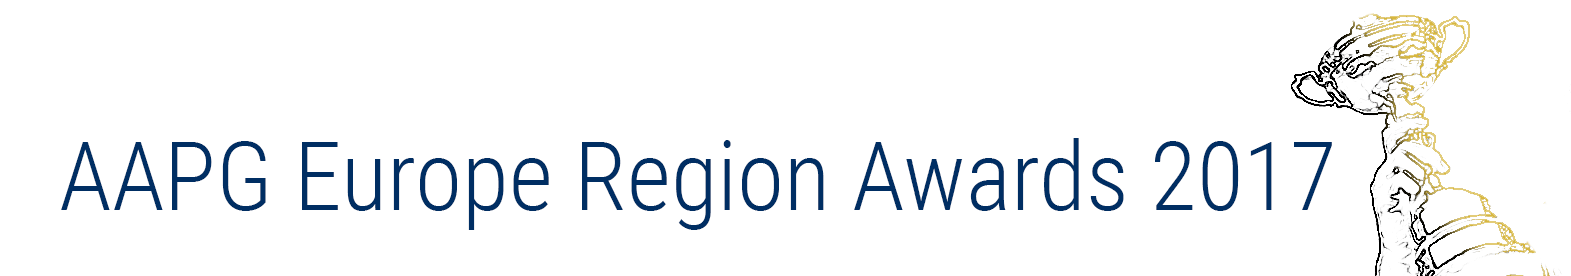 AAPG Europe Region Awards 2017 website